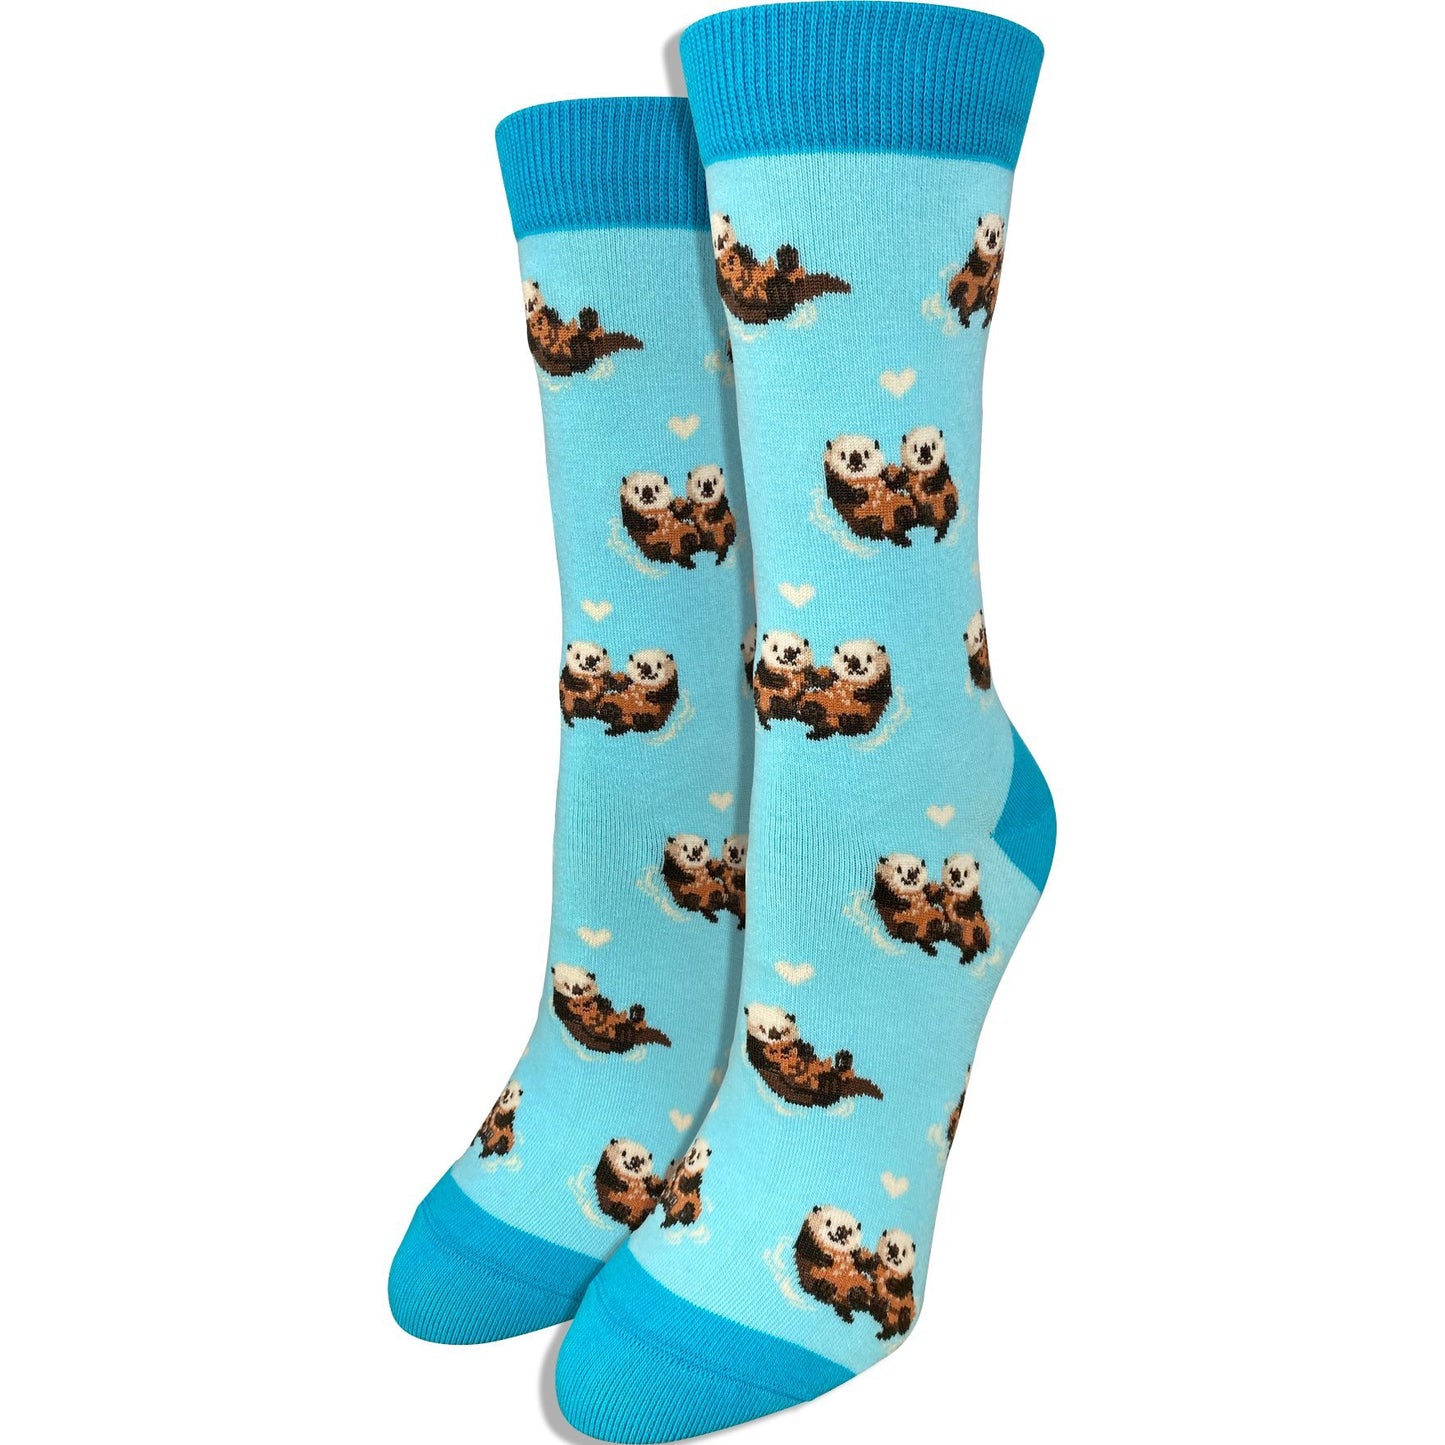 Sea Otter Socks - Imagery Socks